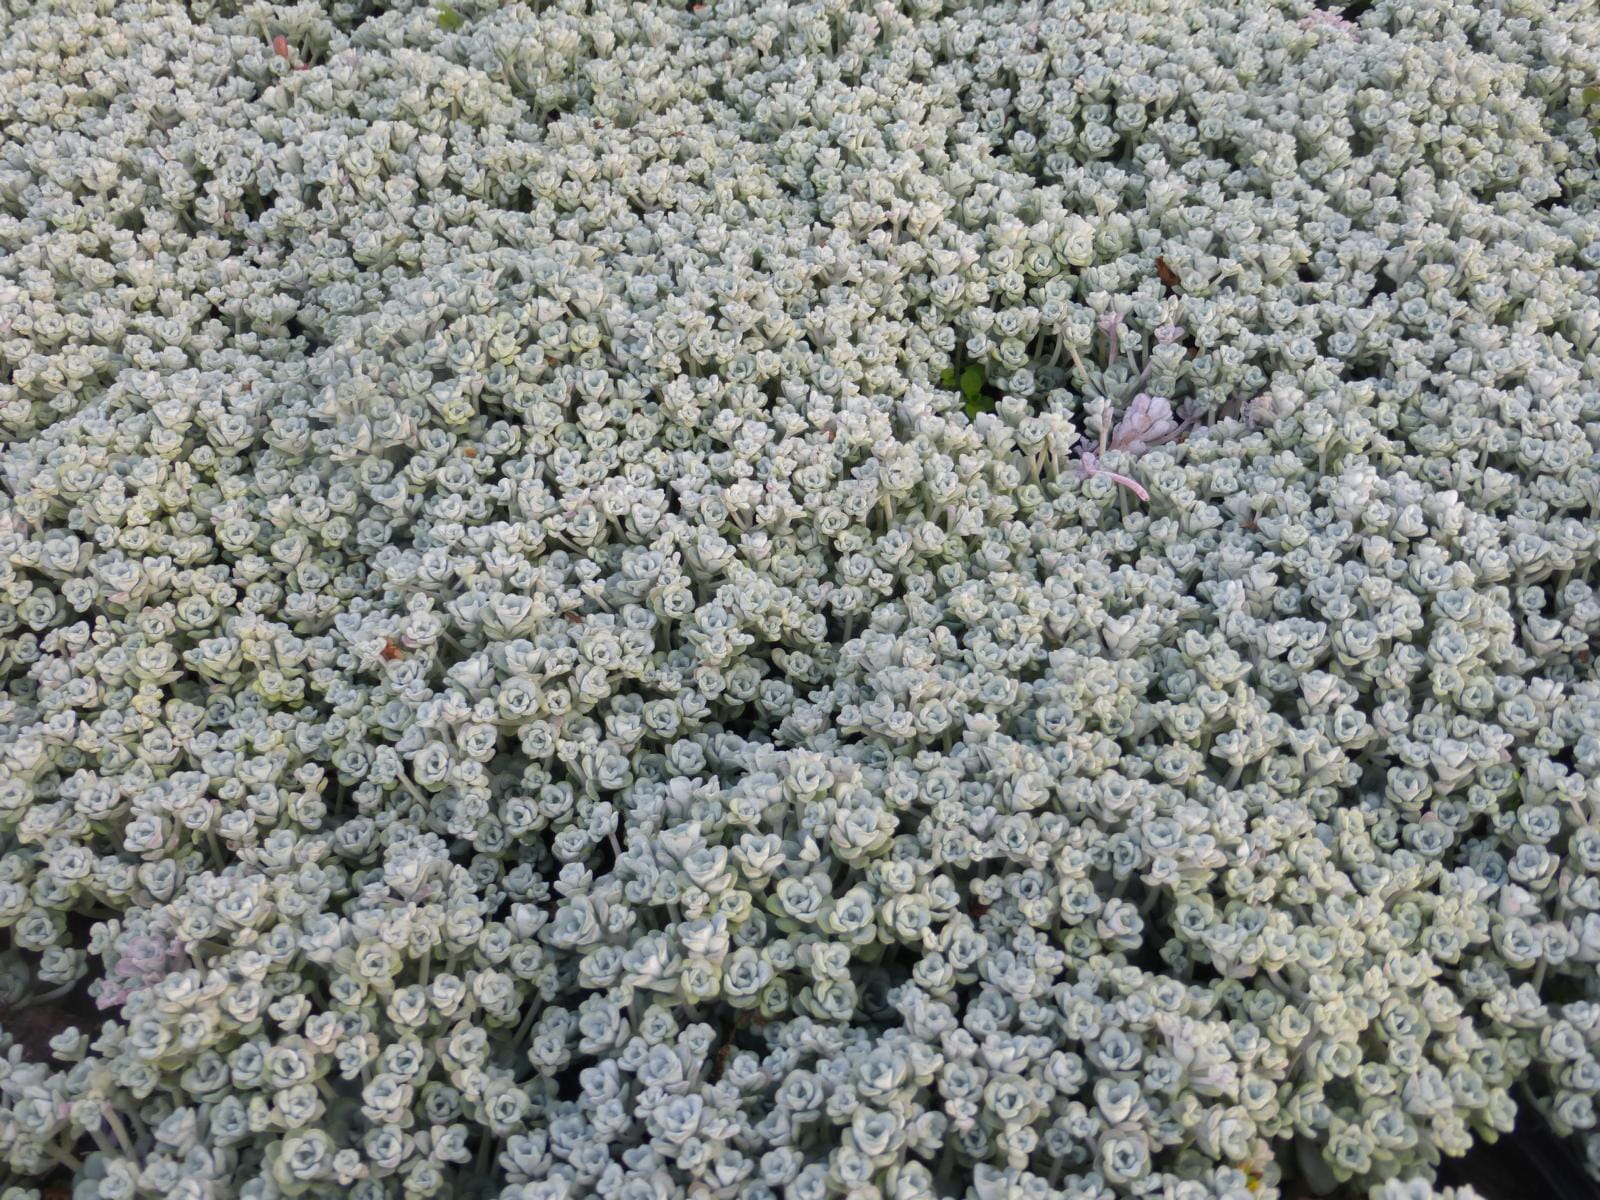 Fettblatt 'Cape Blanco' • Sedum spathulifolium 'Cape Blanco'